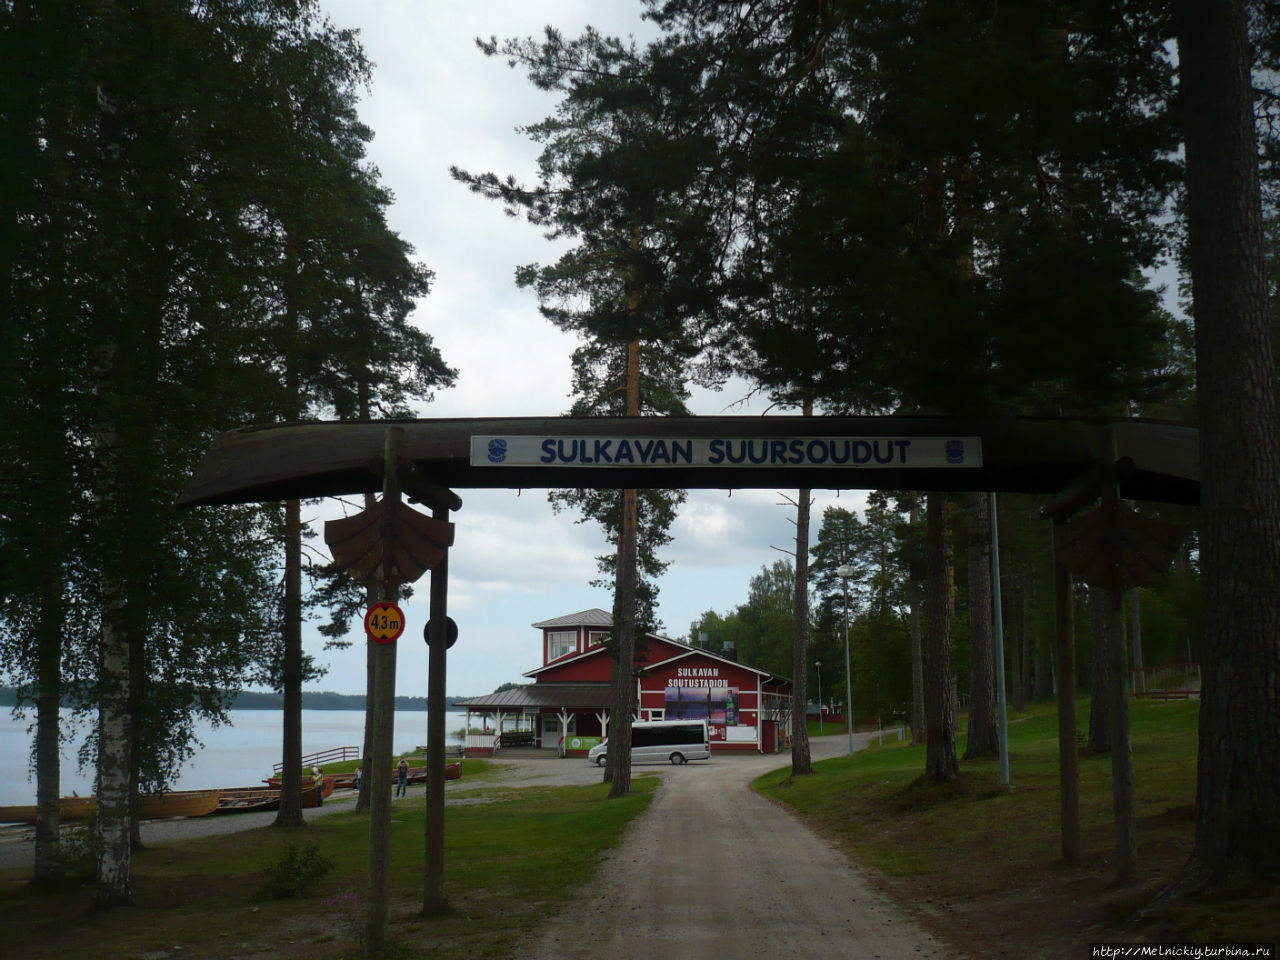 Небольшая прогулка по поселку гребцов Сулкава, Финляндия